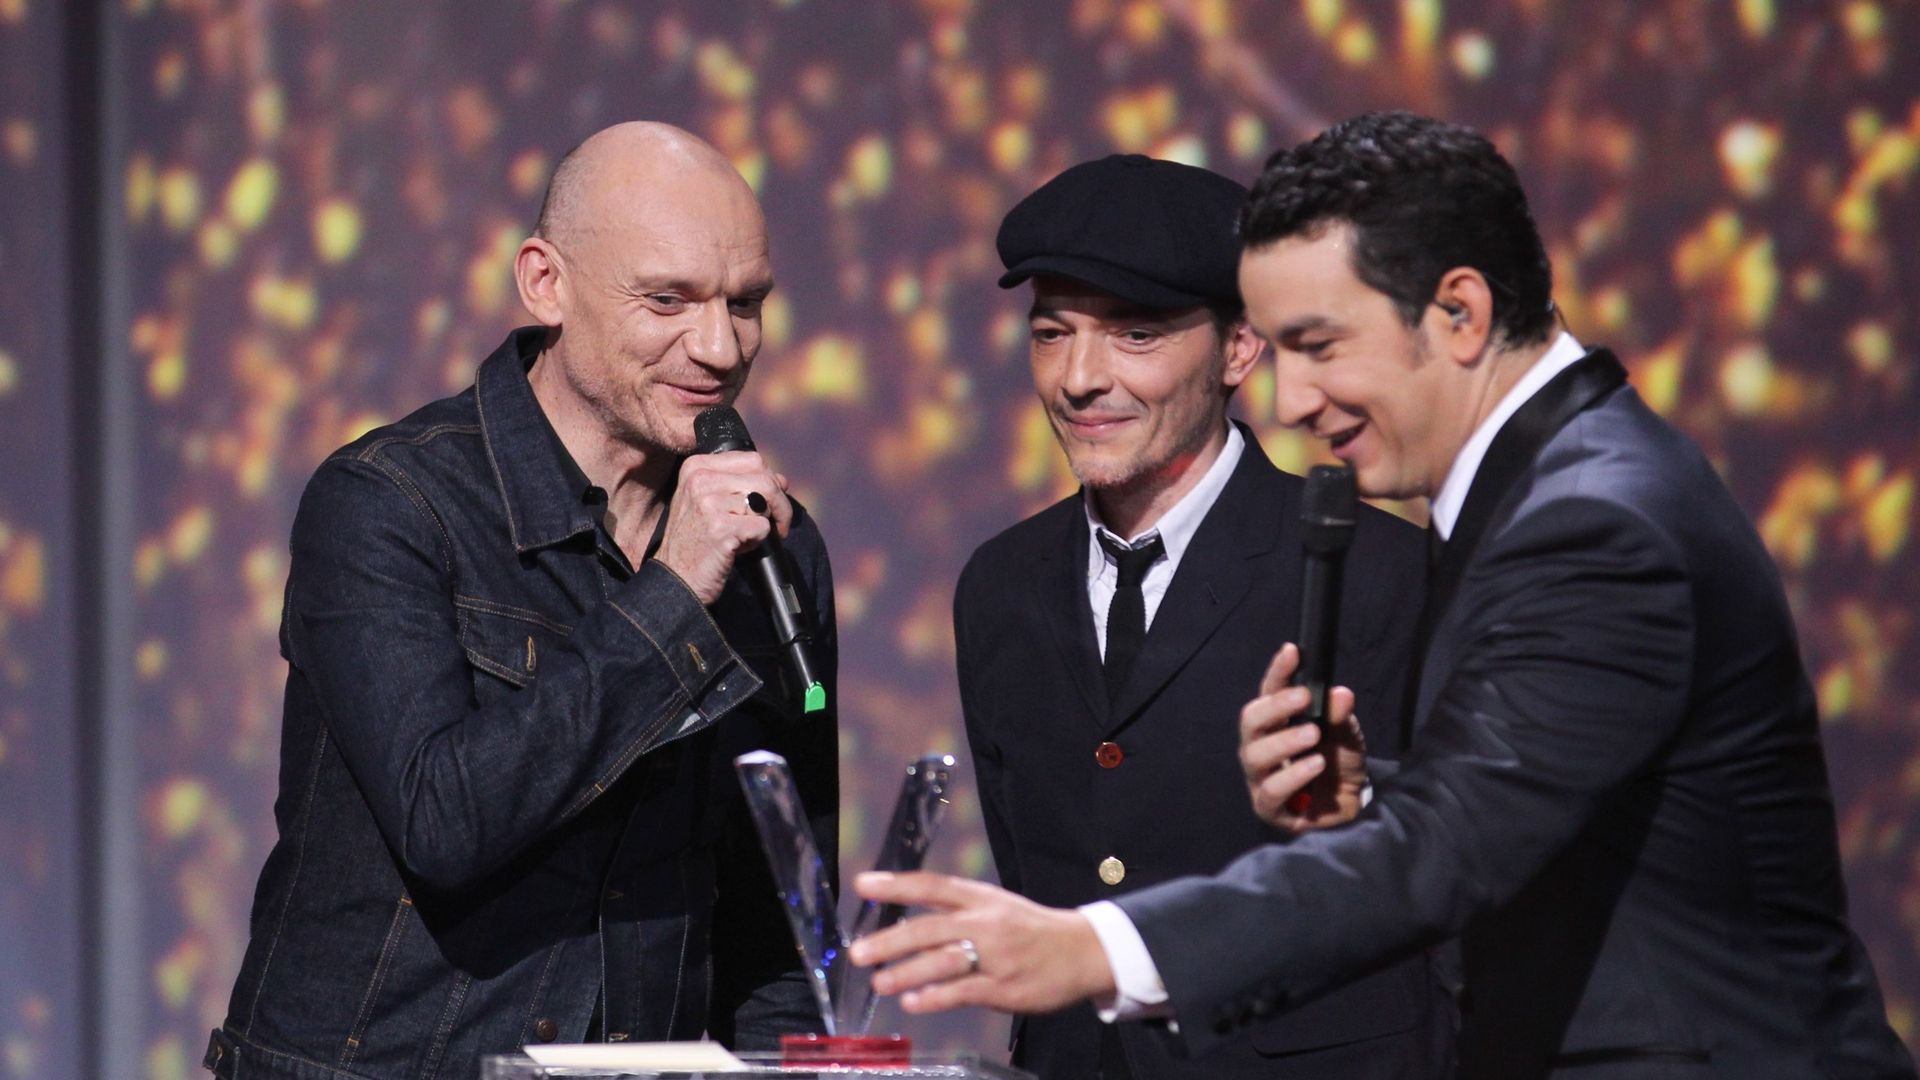 Le groupe "Louise Attaque" reçoit un Prix lors des "32e Victoires de la Musique 2017" au Zénith le 10 février 2017 à Paris, France.